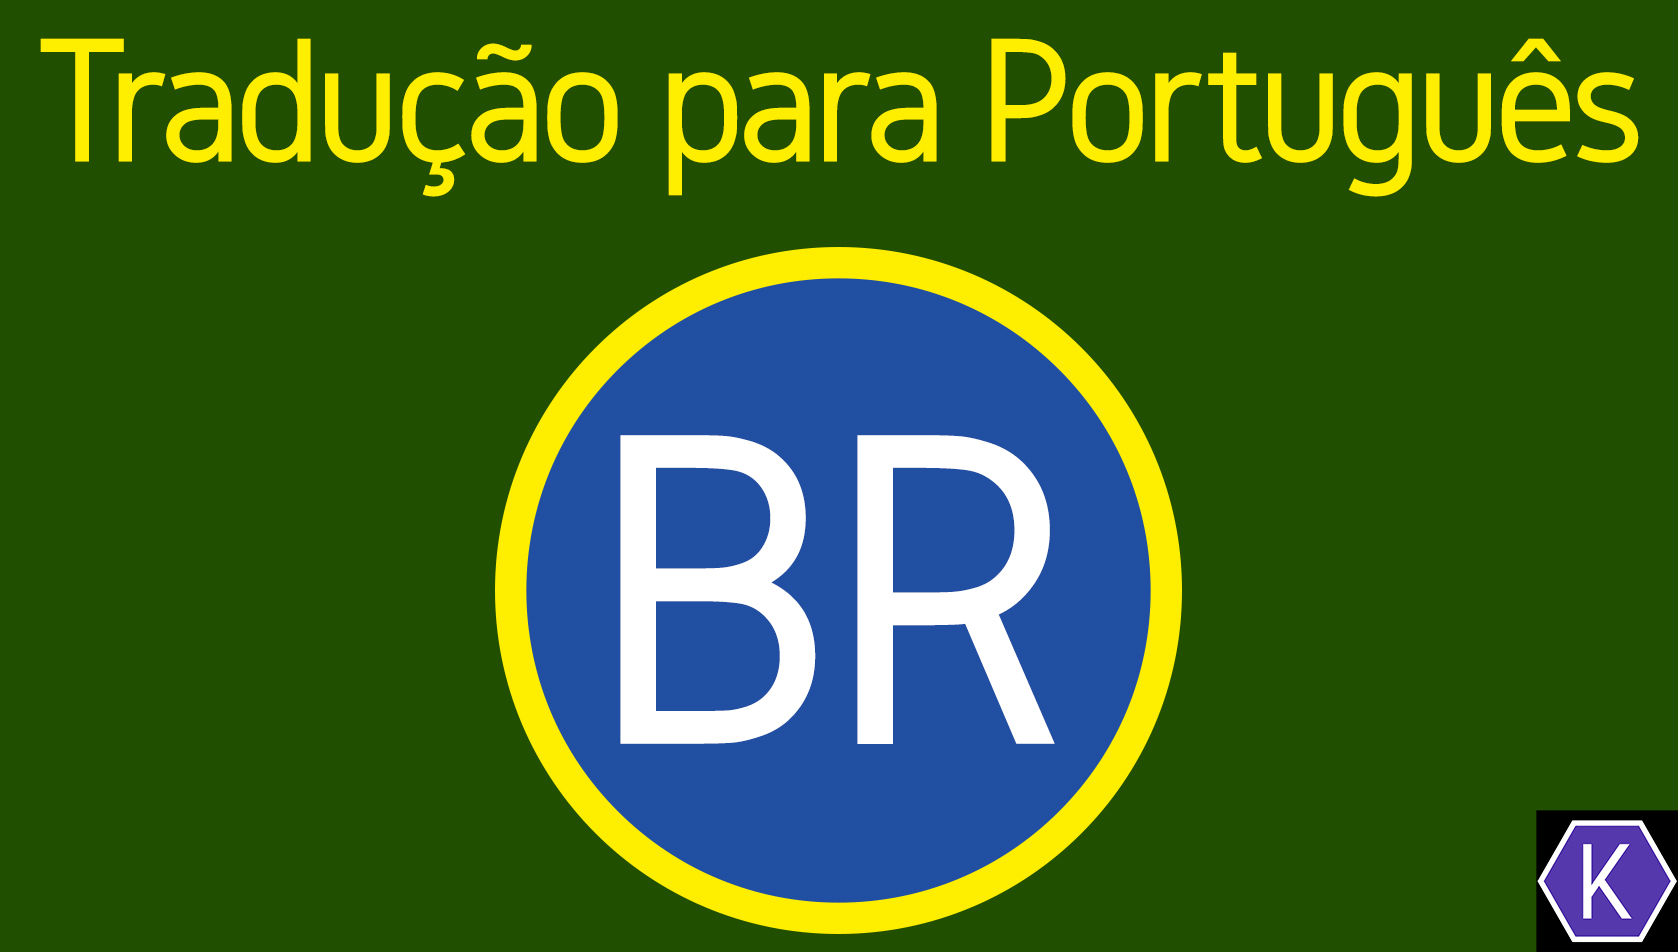 Steam Workshop::Tradução para Português Brasileiro PT-BR